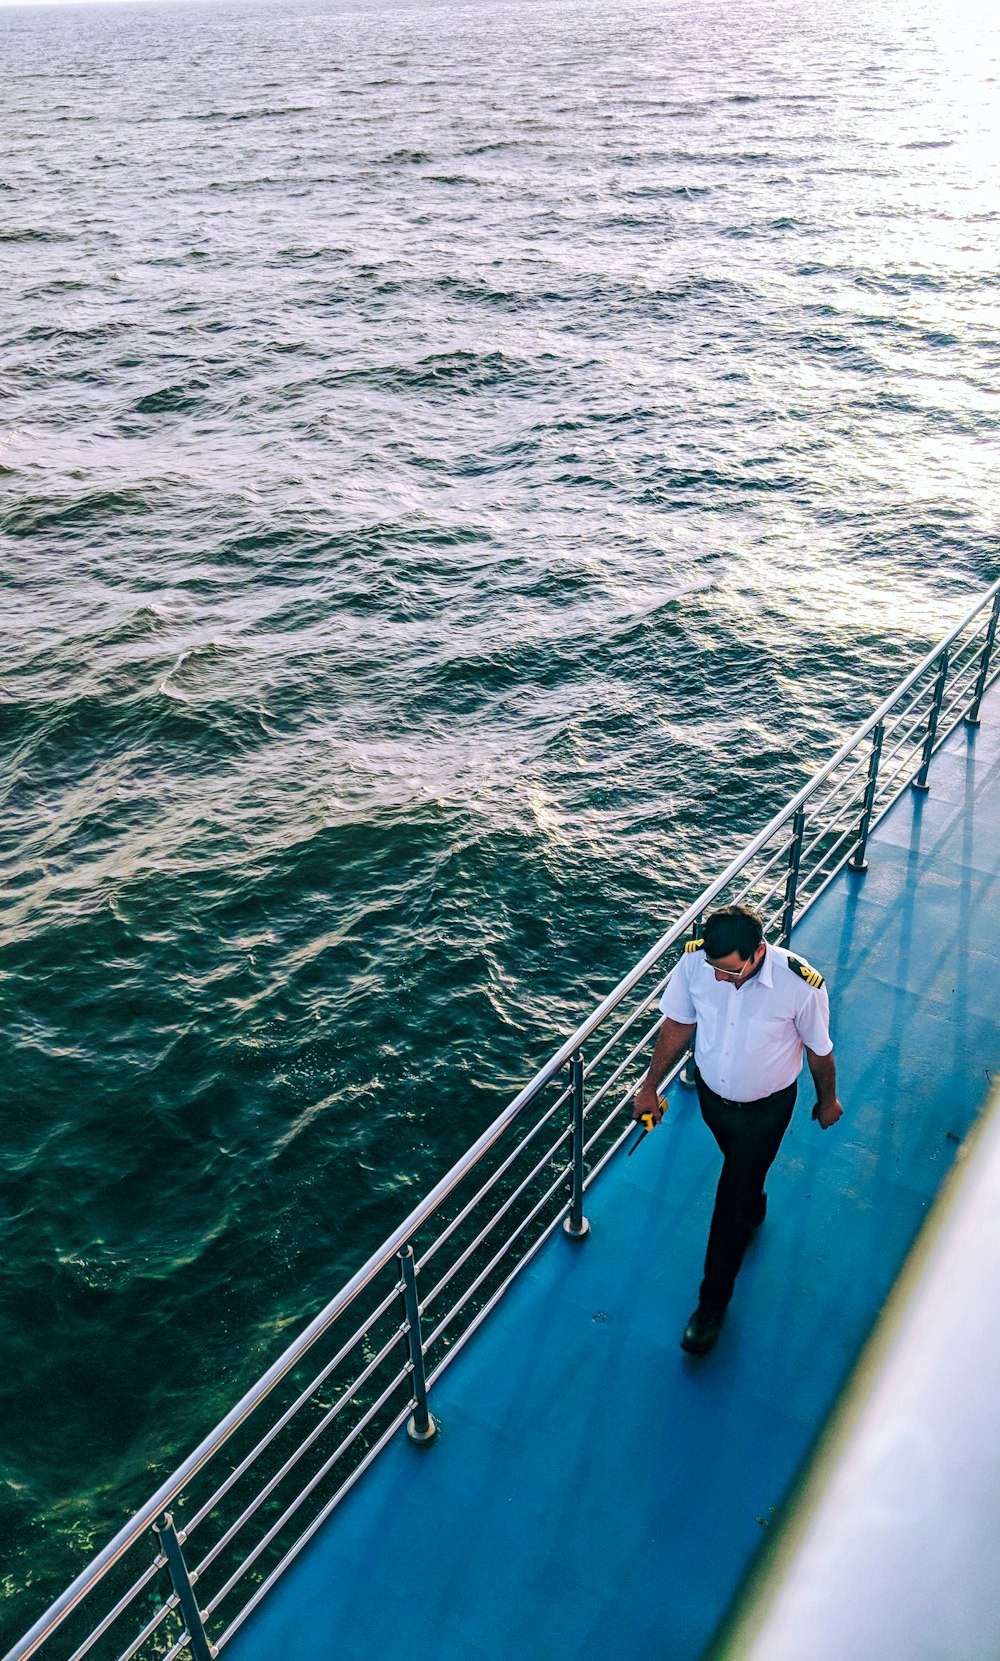 homem caminhando na superfície azul do barco